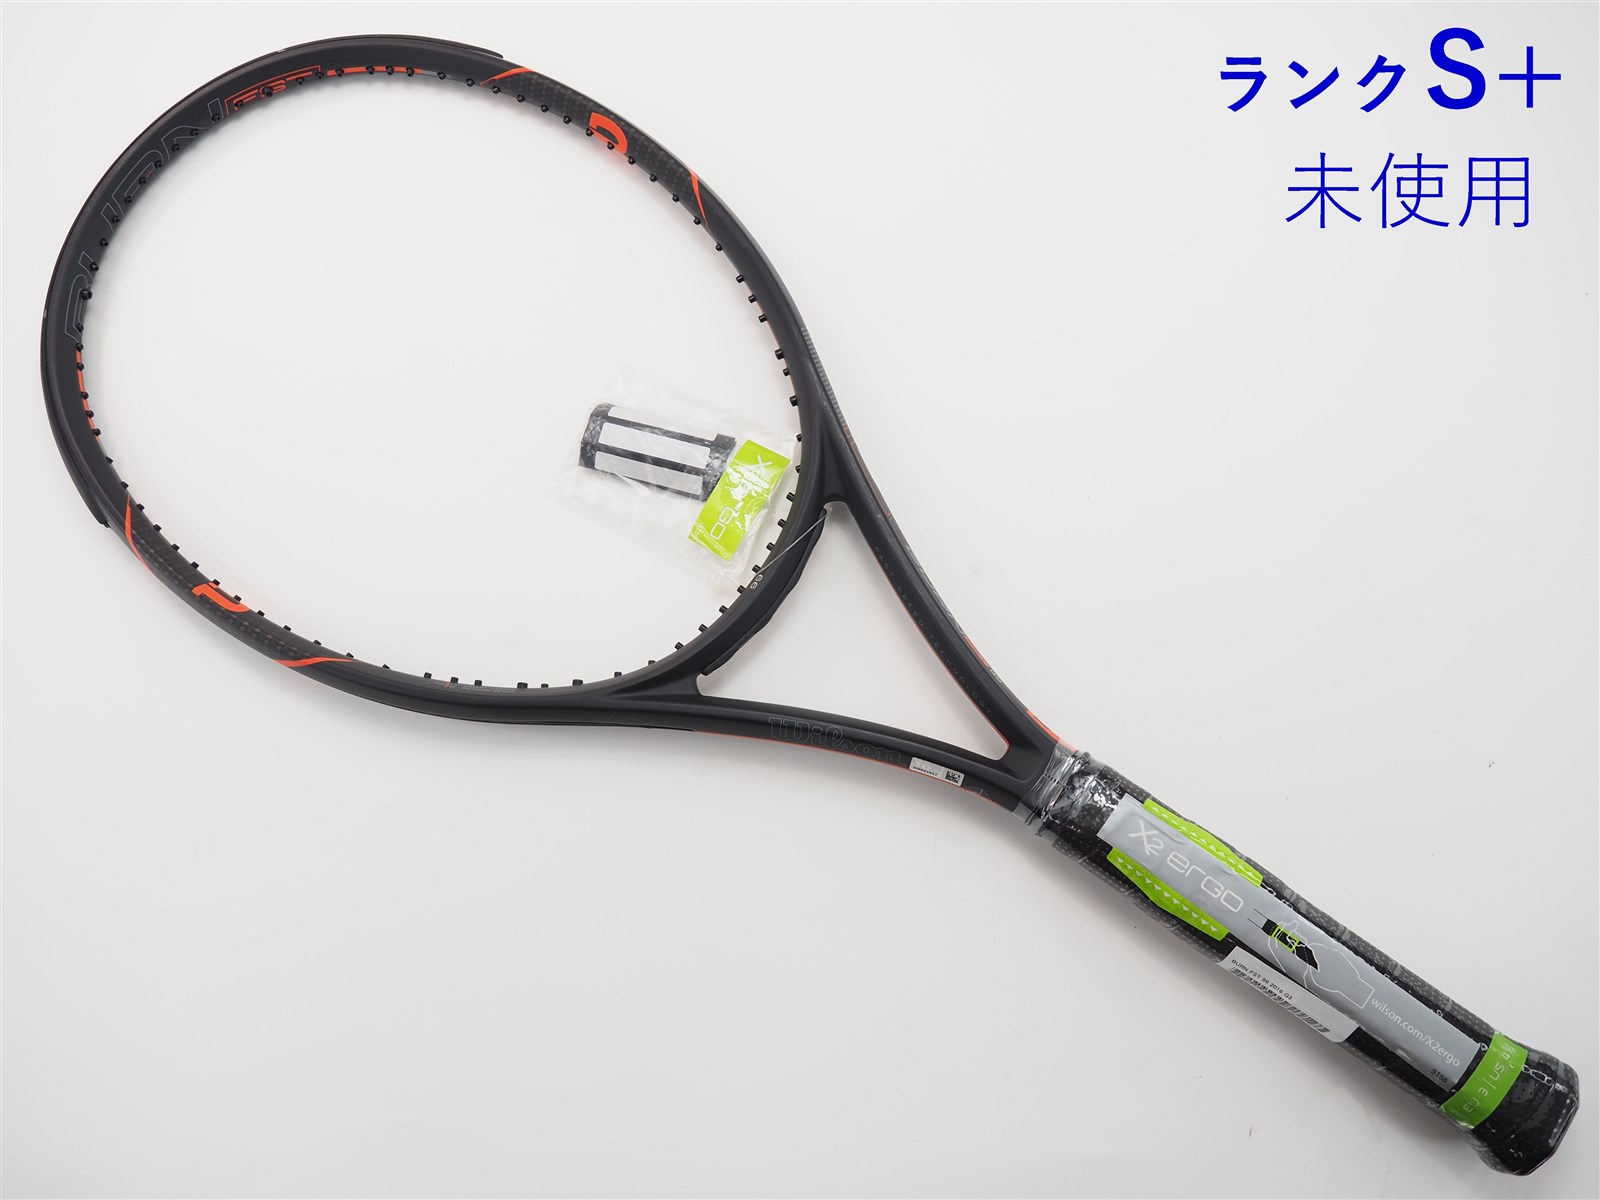 テニスラケット ウィルソン バーン FST 95 2016年モデル (G3)WILSON BURN FST 95 2016